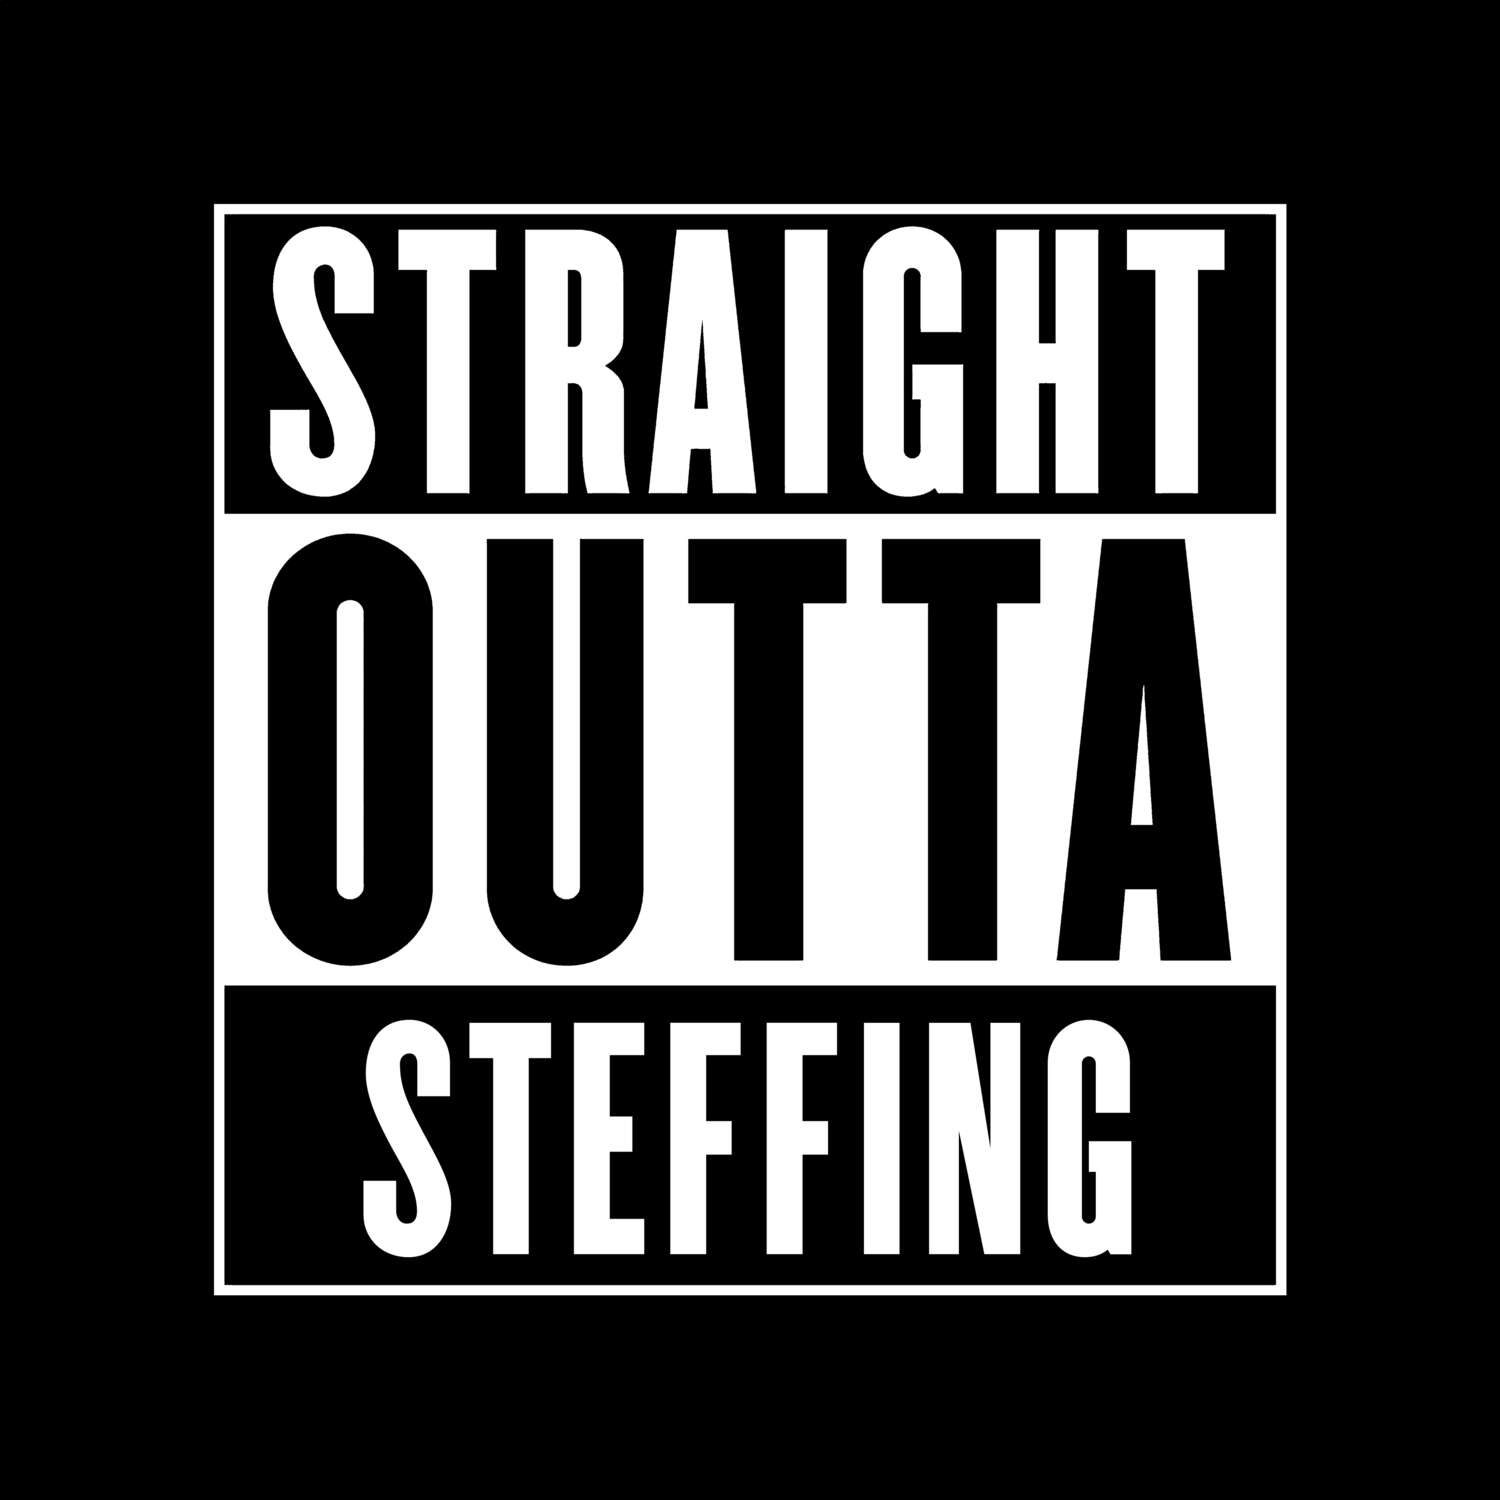 Steffing T-Shirt »Straight Outta«